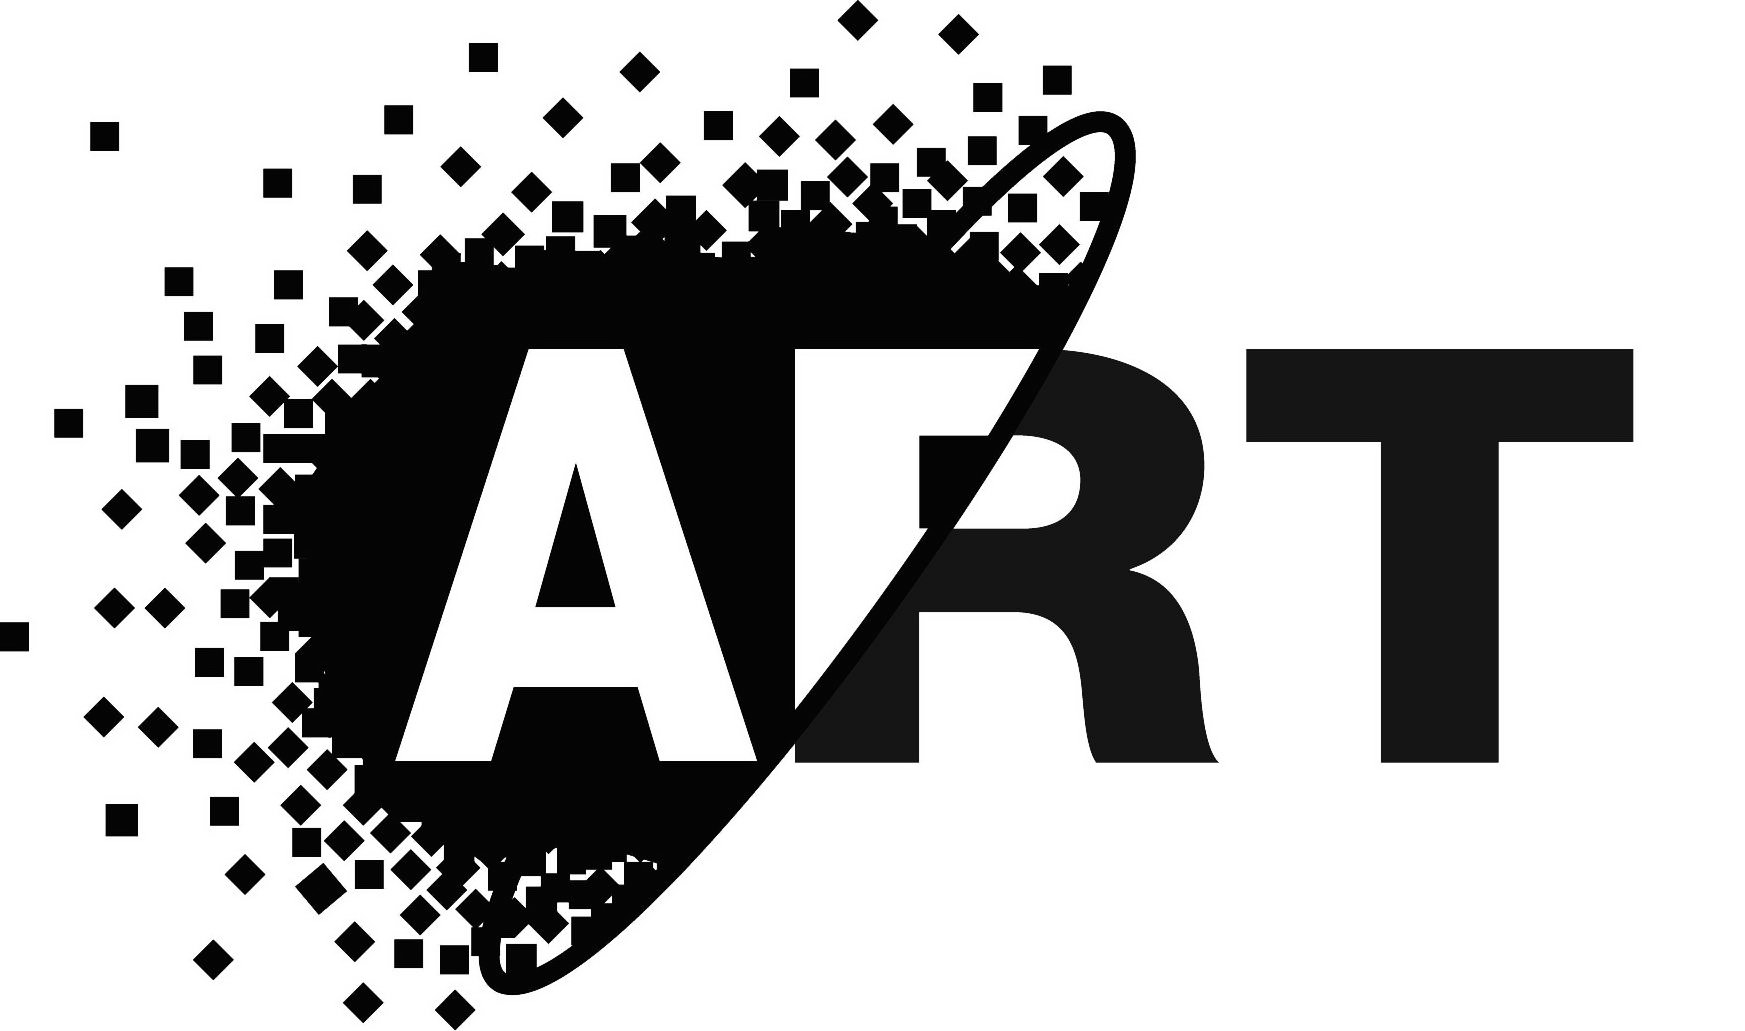 Trademark Logo ART